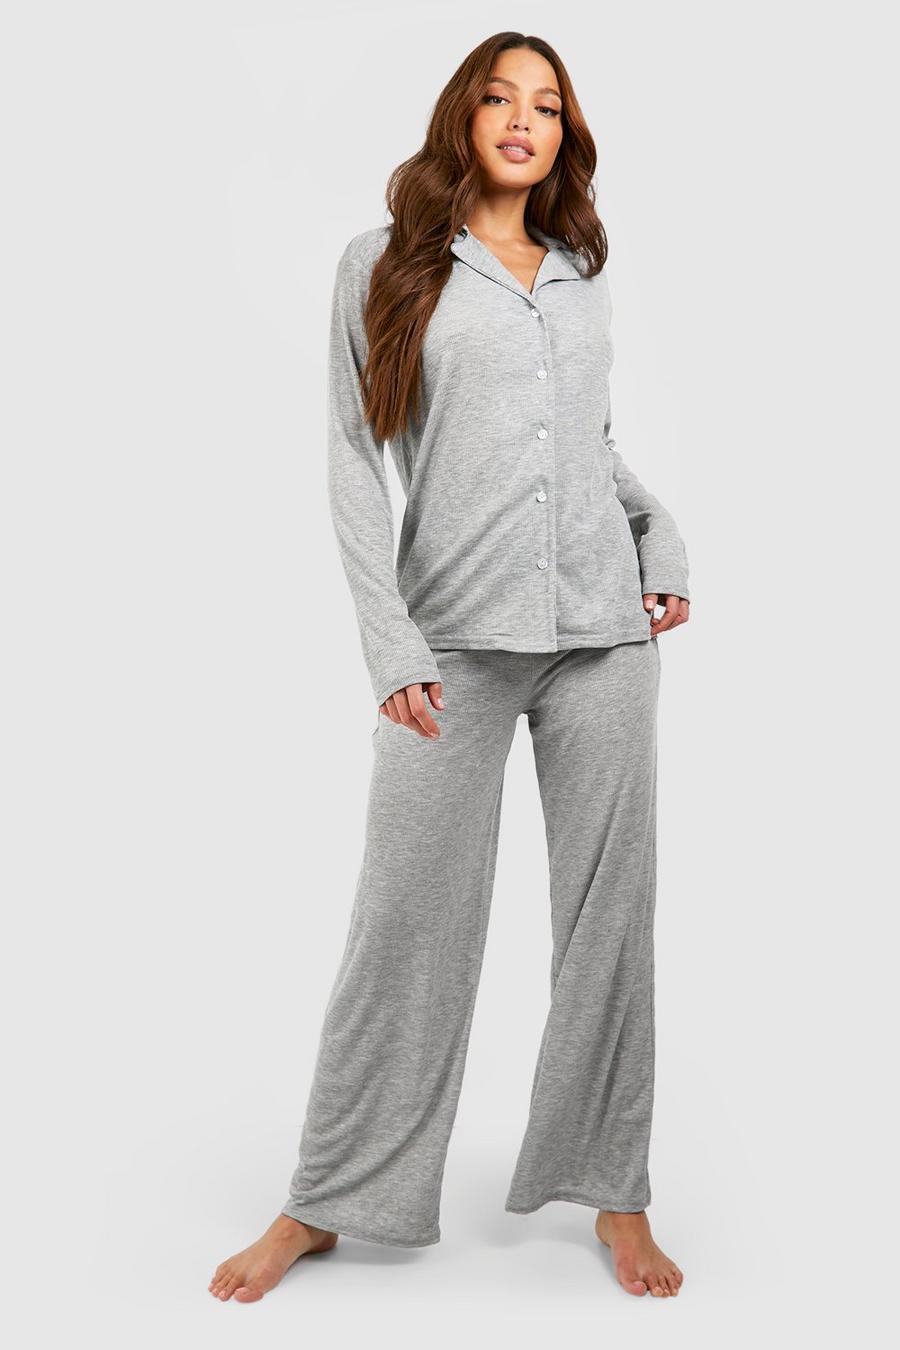 Women's Tall Pajamas, Women's Tall Pajama Pants